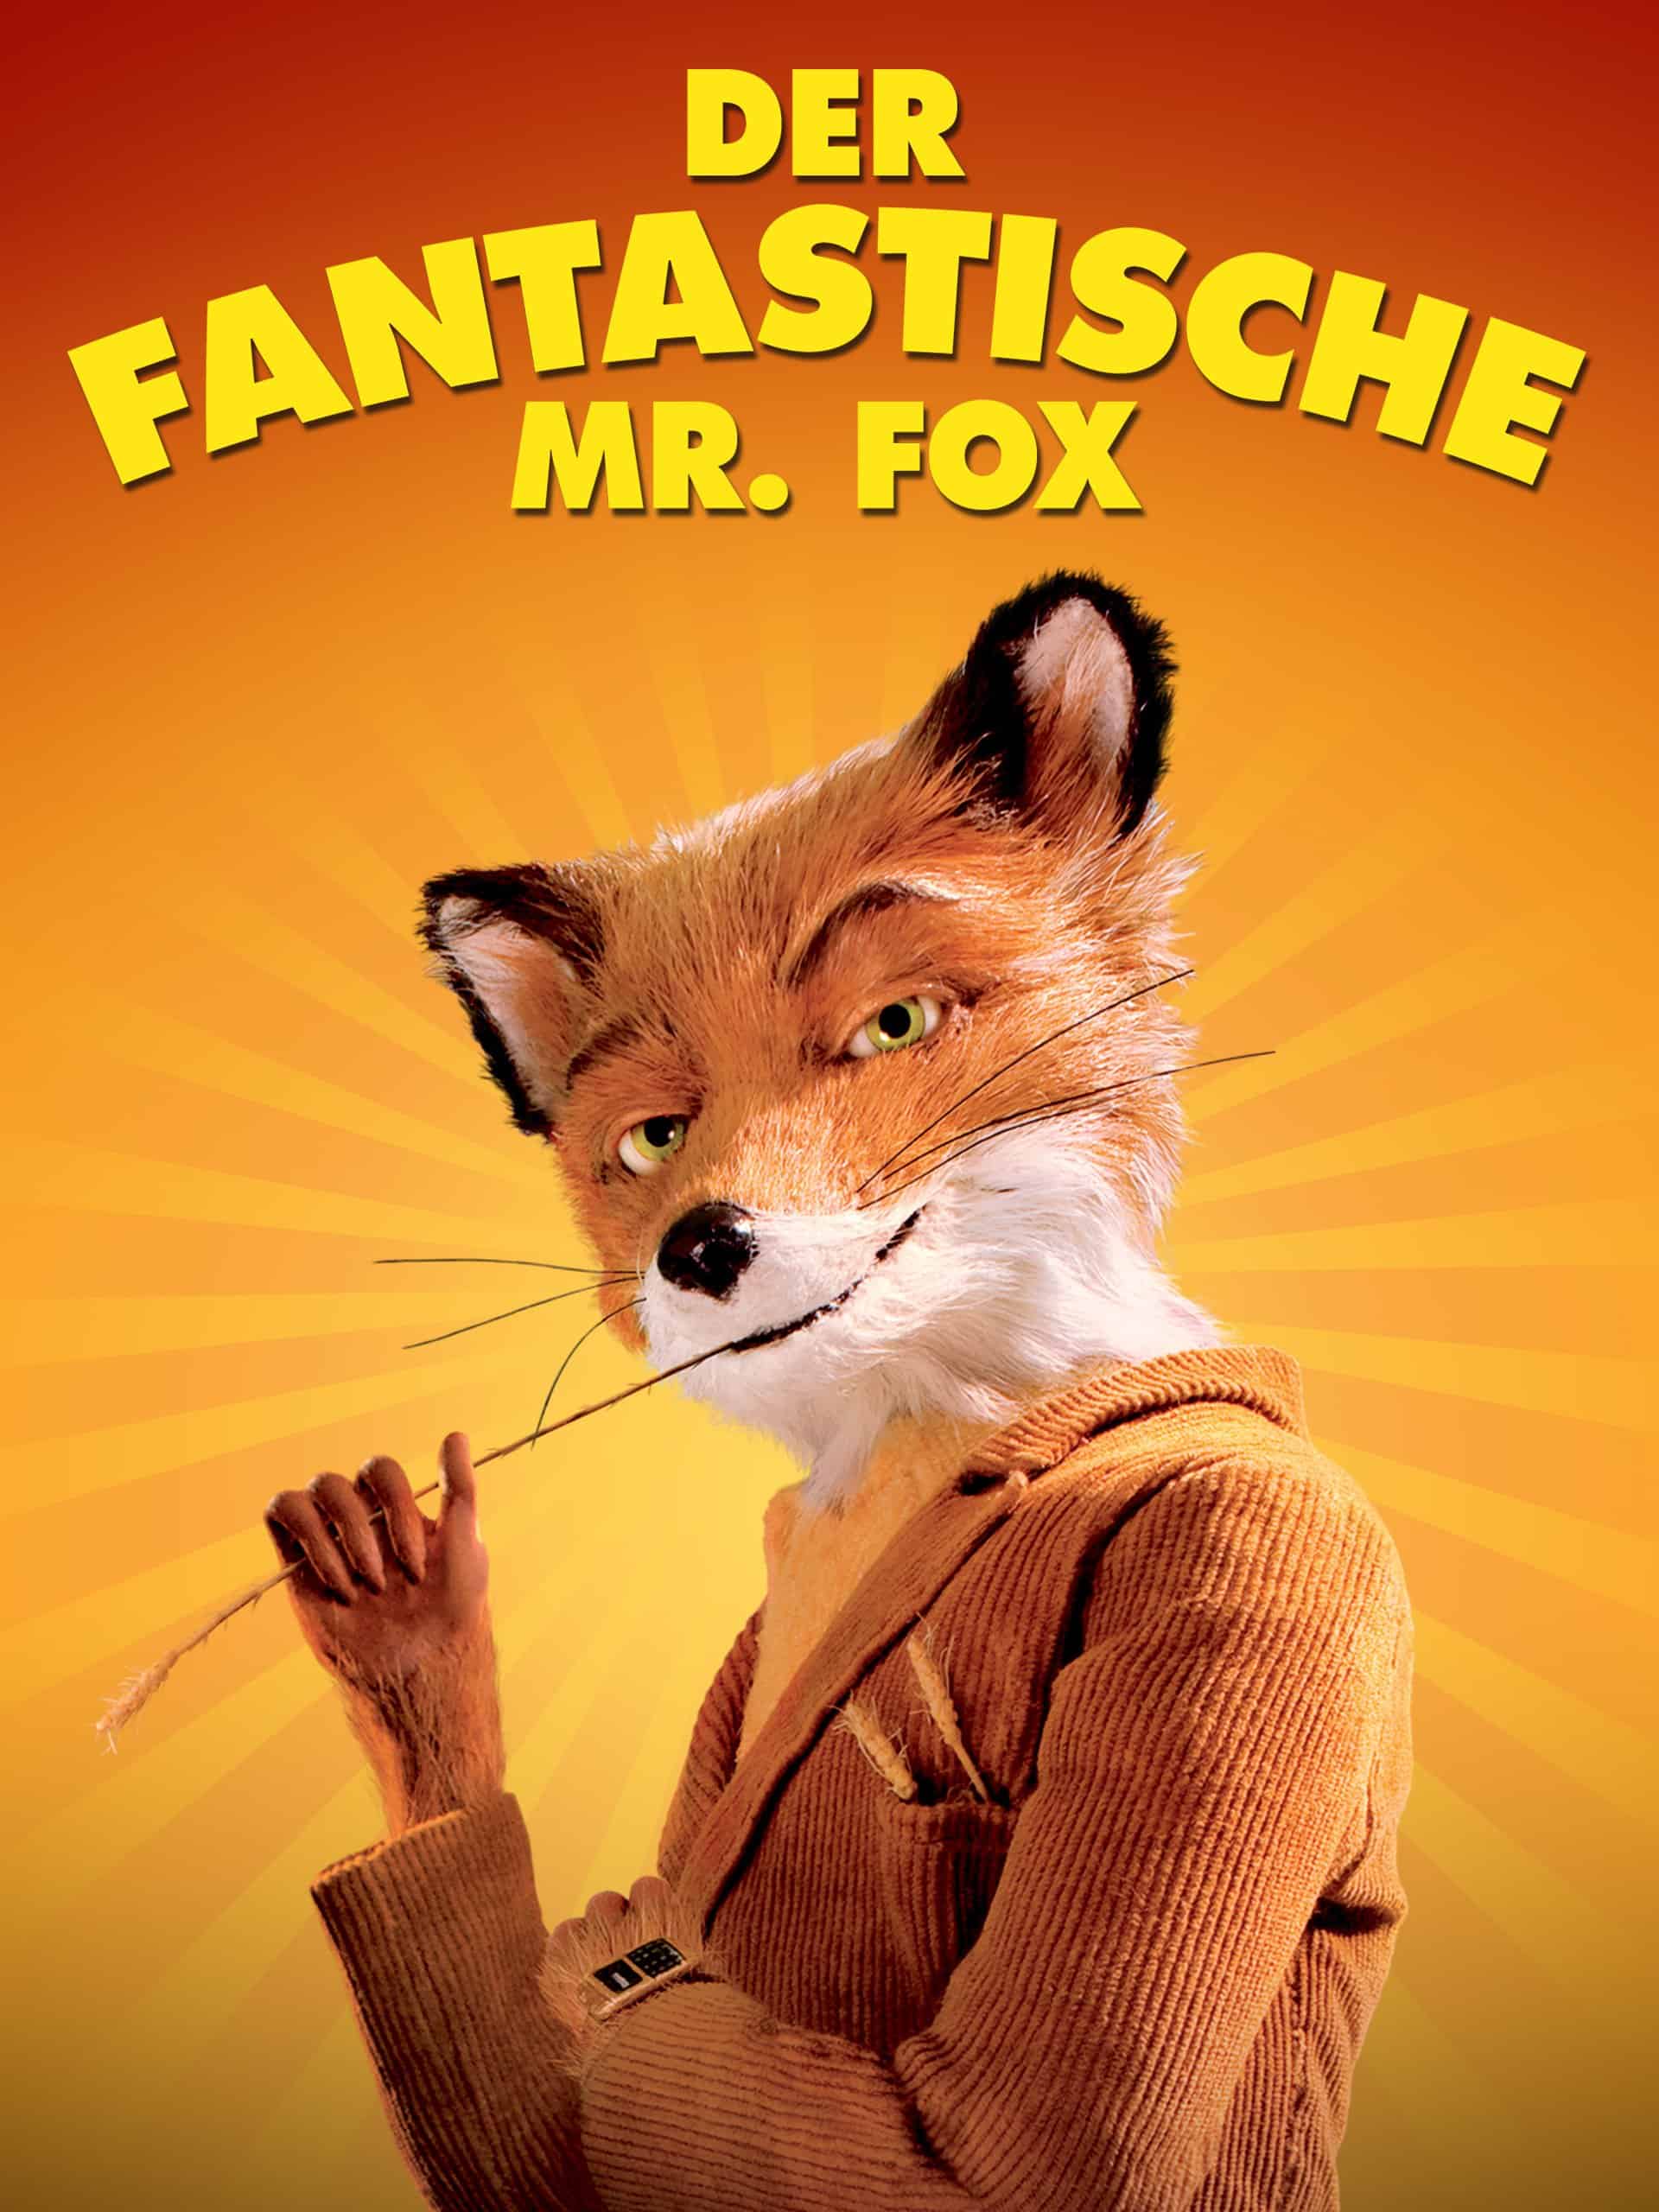 Der fantastische Mr. Fox (Wes Anderson, 2009)